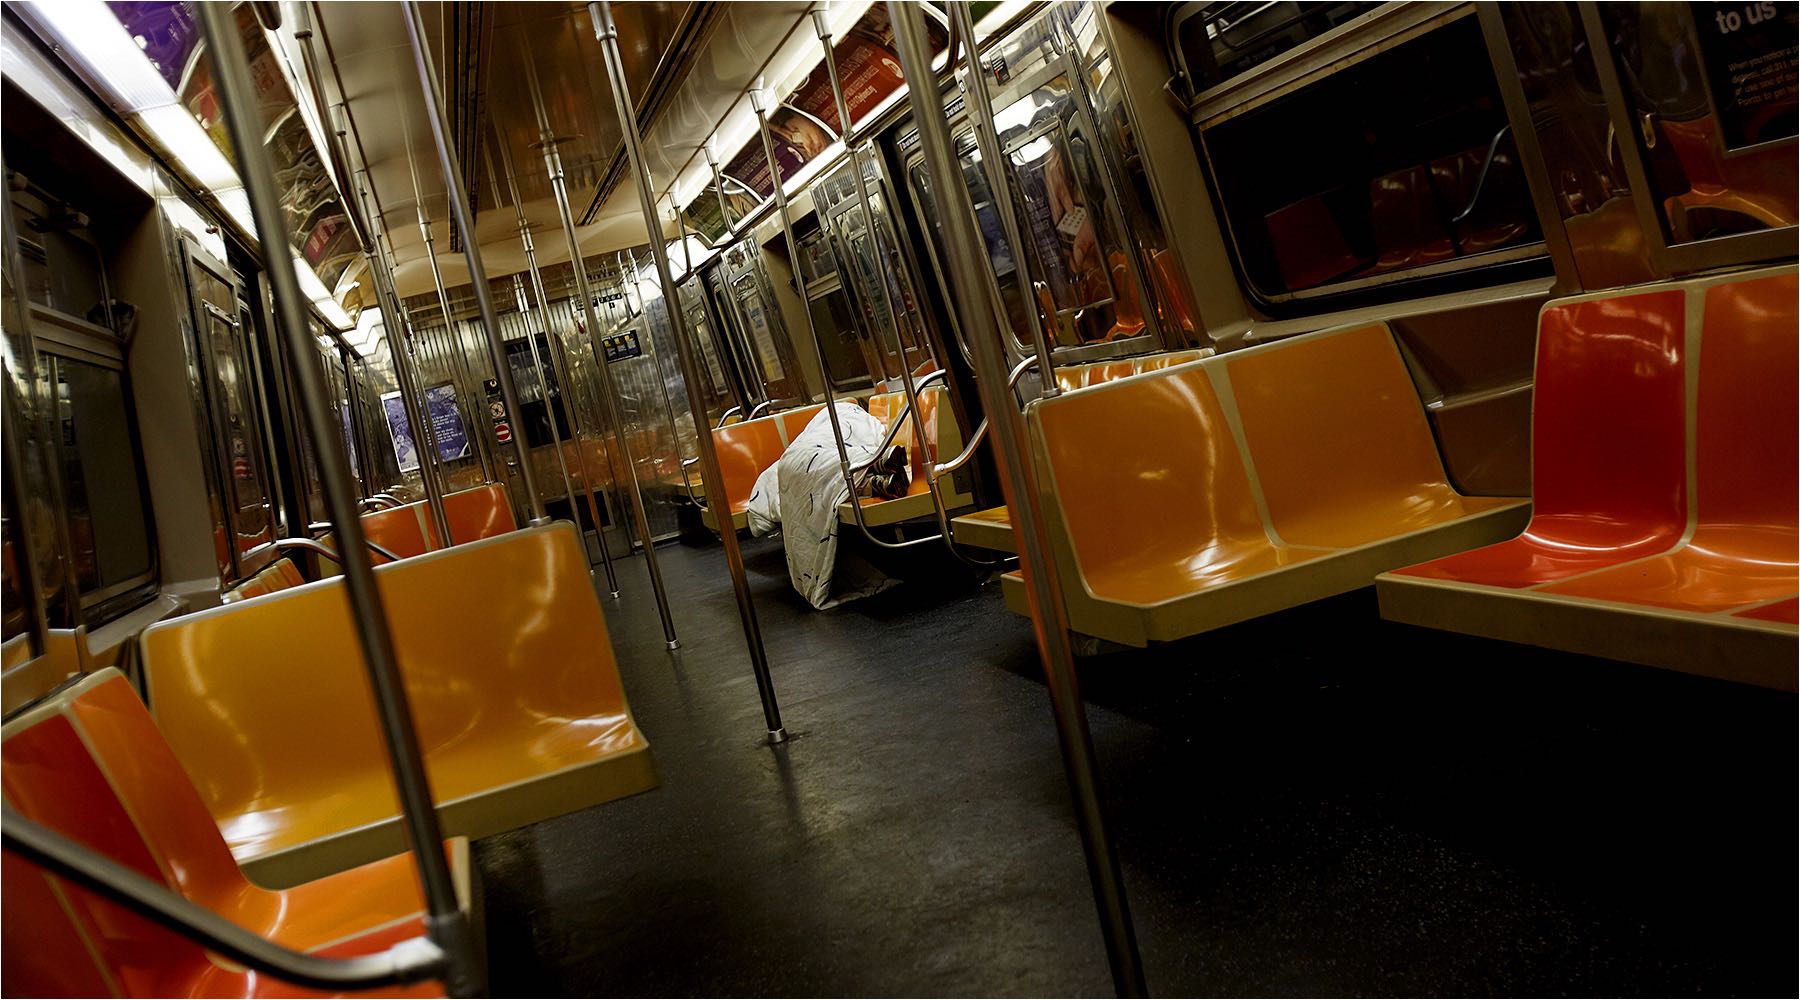  Reportagefotografie. Das Leben in New York. Obdachloser in der U-Bahn. On Location Digital Fotografie mit vorhandenem Licht. Copyright by Fotostudio Jörg Riethausen 